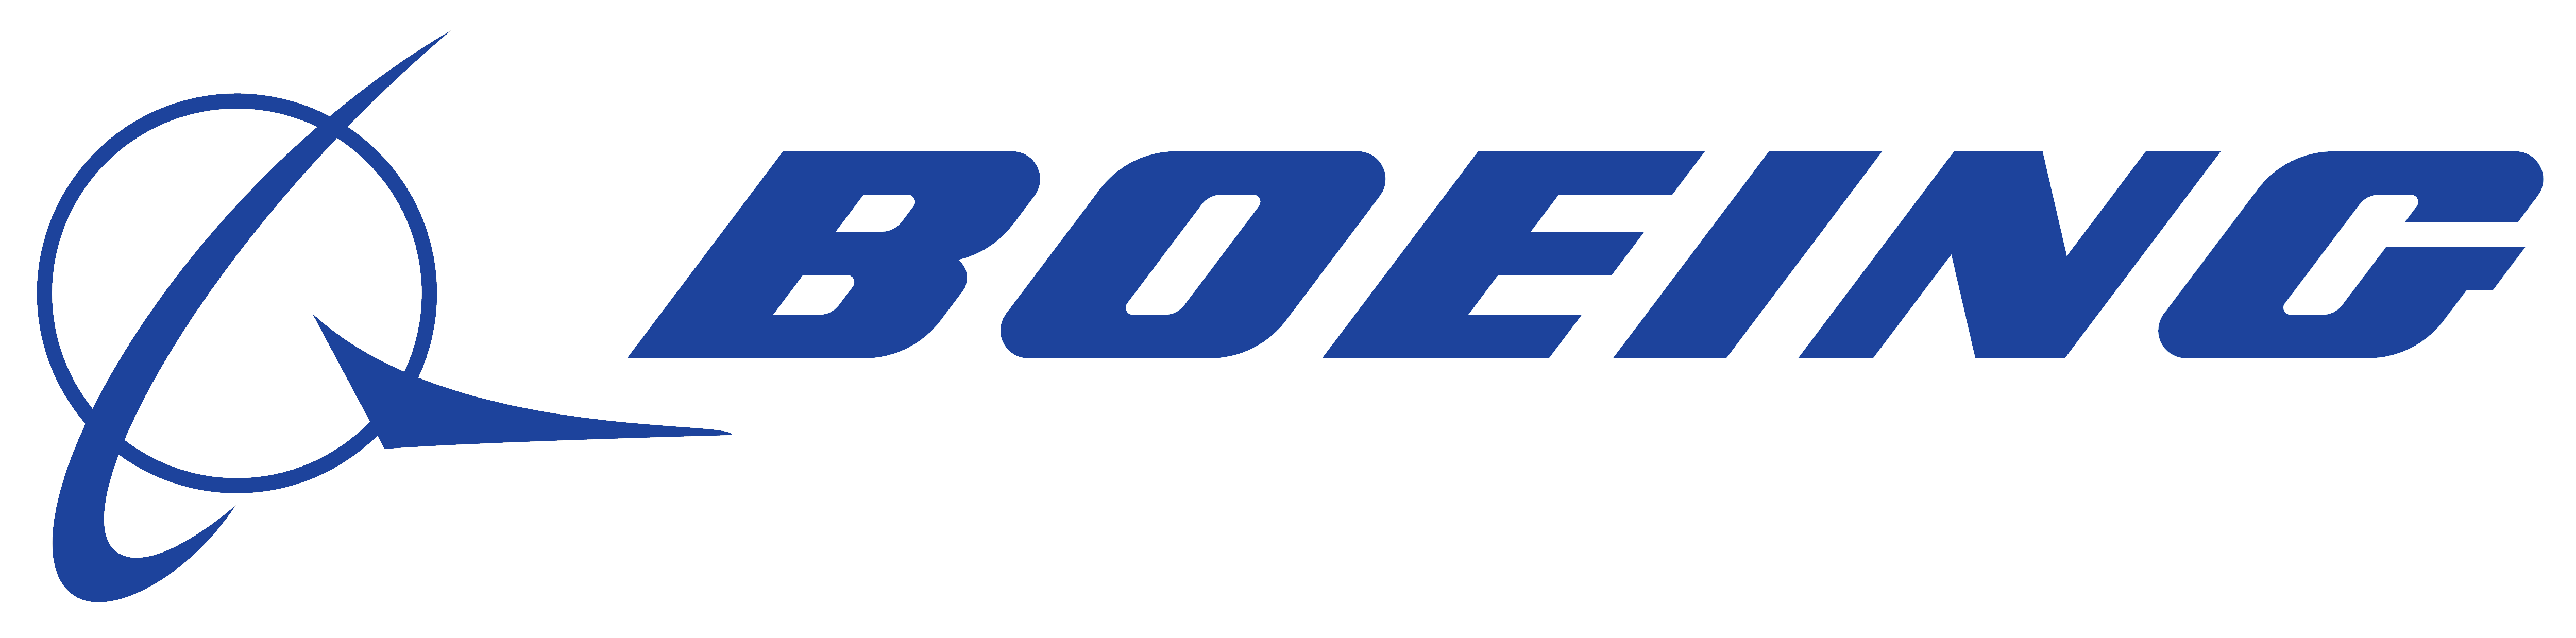 Boeing_logo_2.png